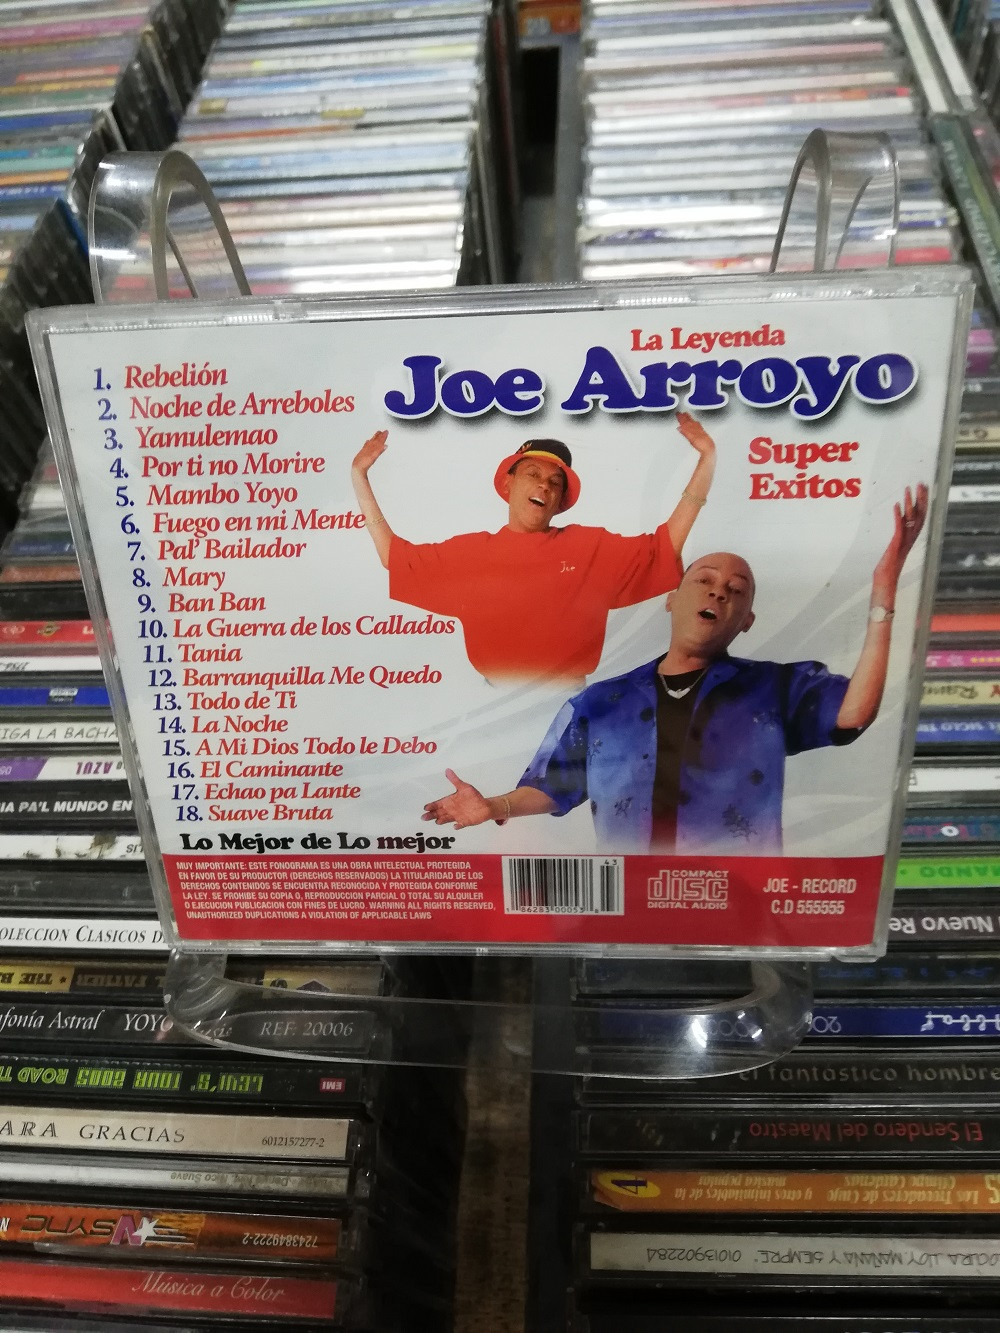 Imagen CD JOE ARROYO - SUPER EXITOS 2